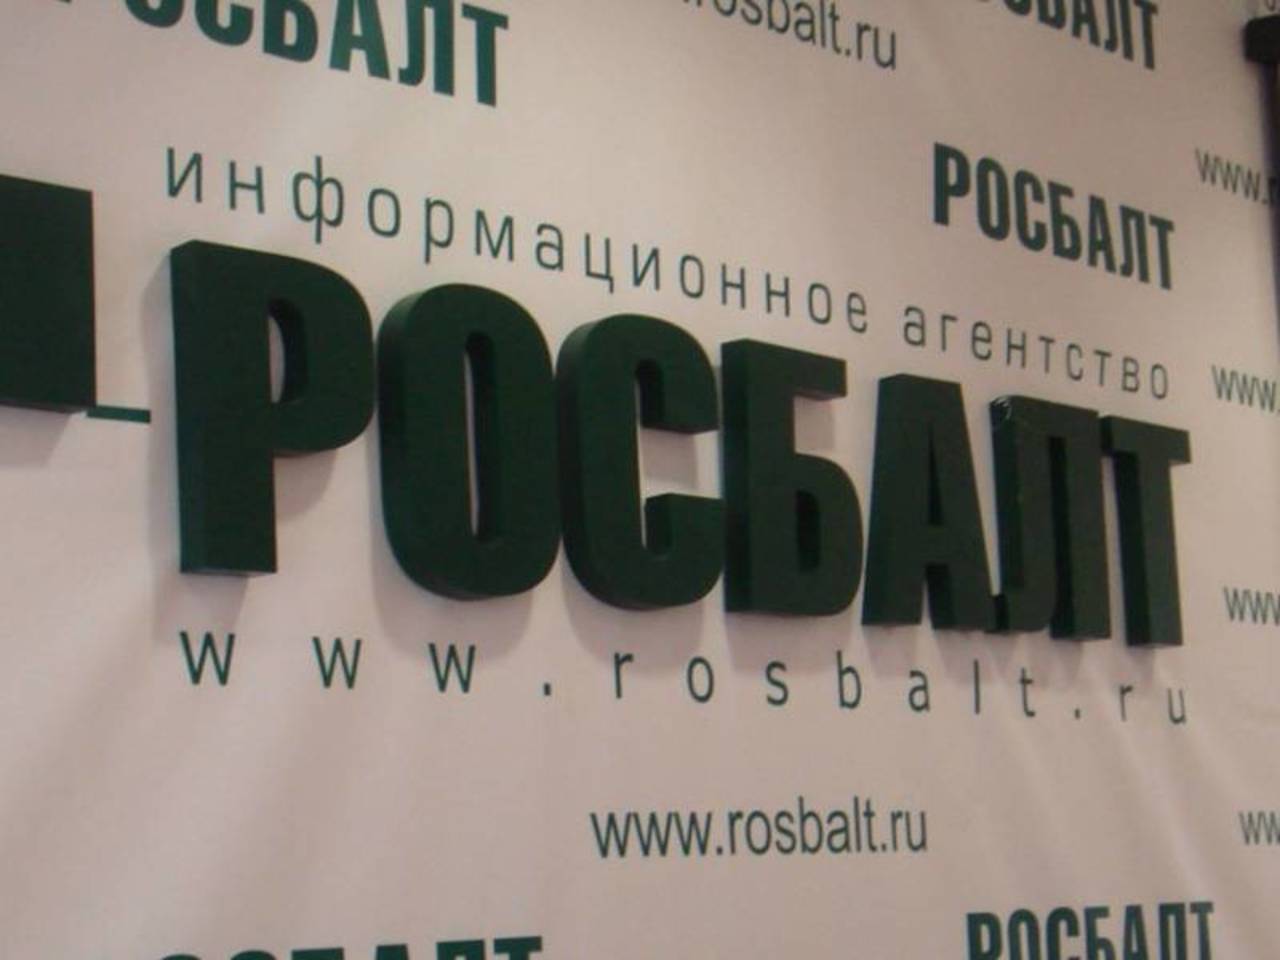 www.rosbalt.ru